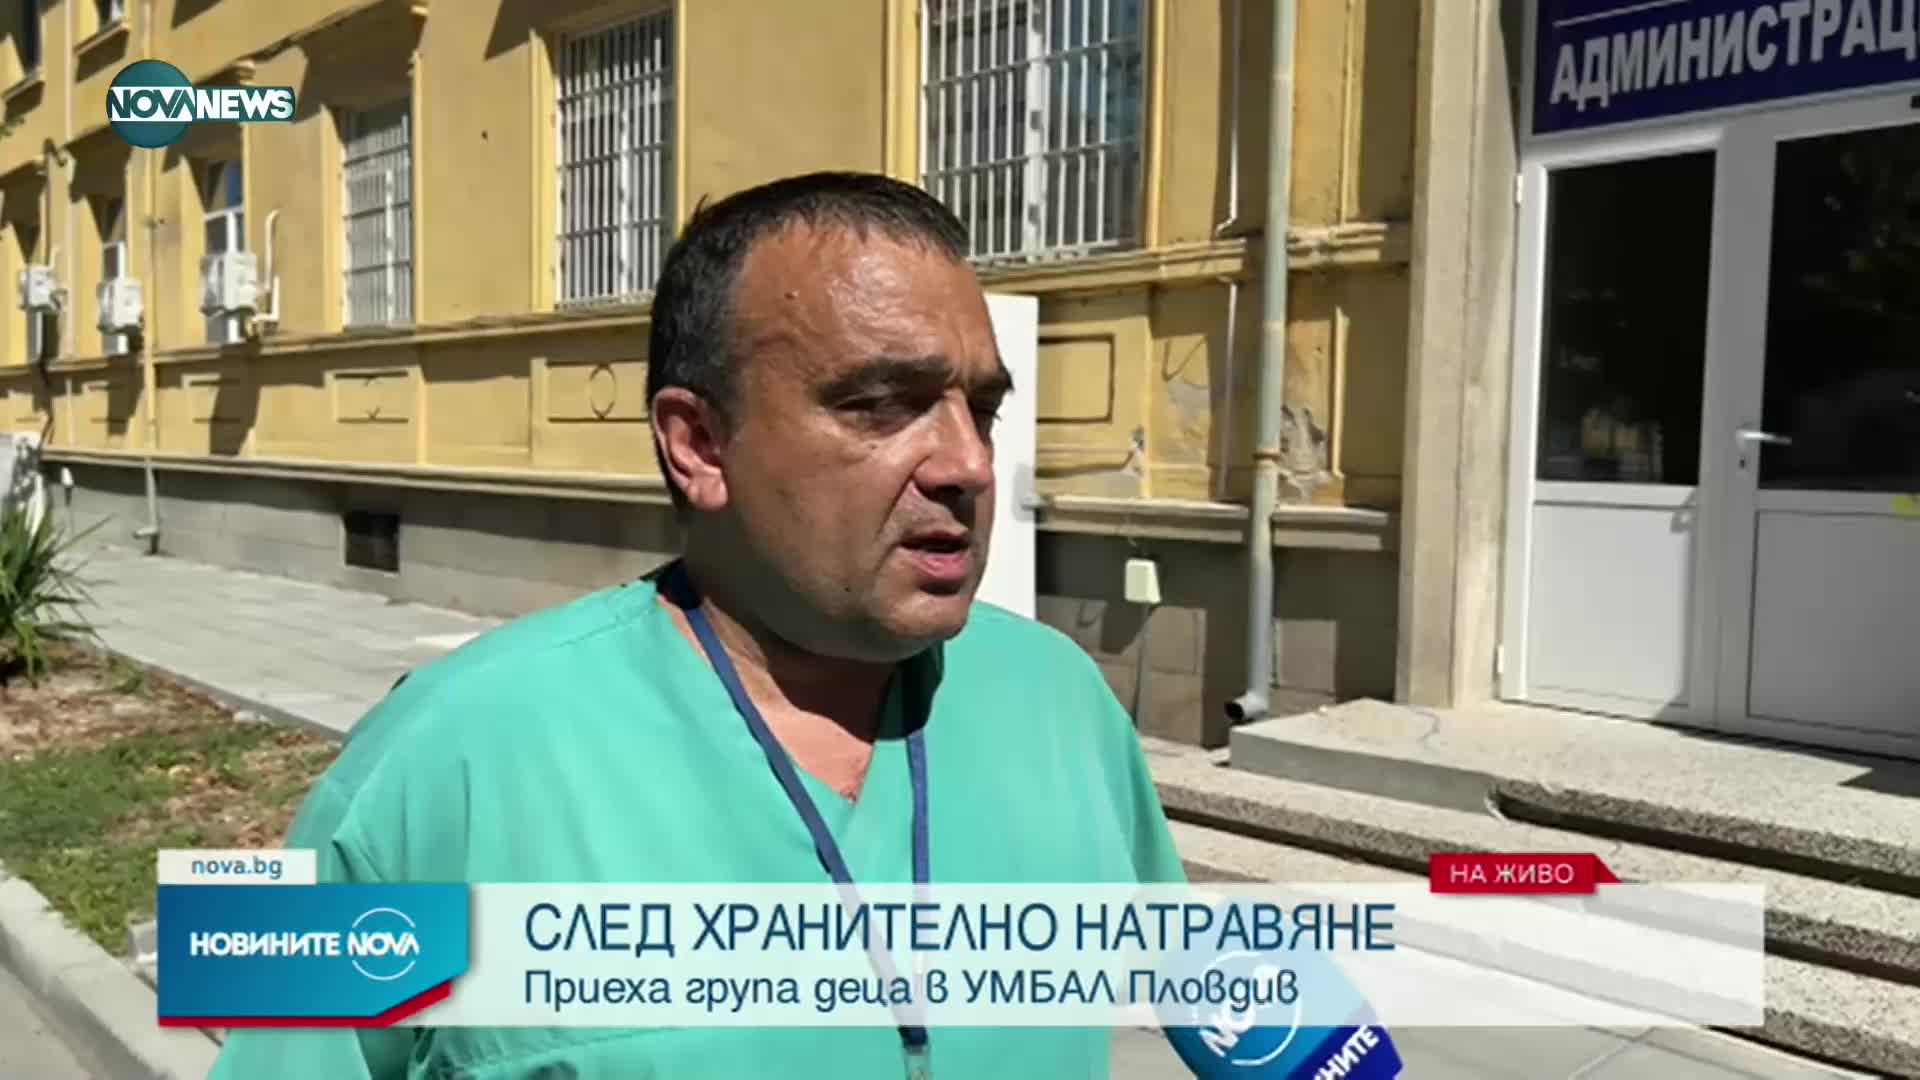 12 деца от училище в Пловдив са в болница с хранително натравяне